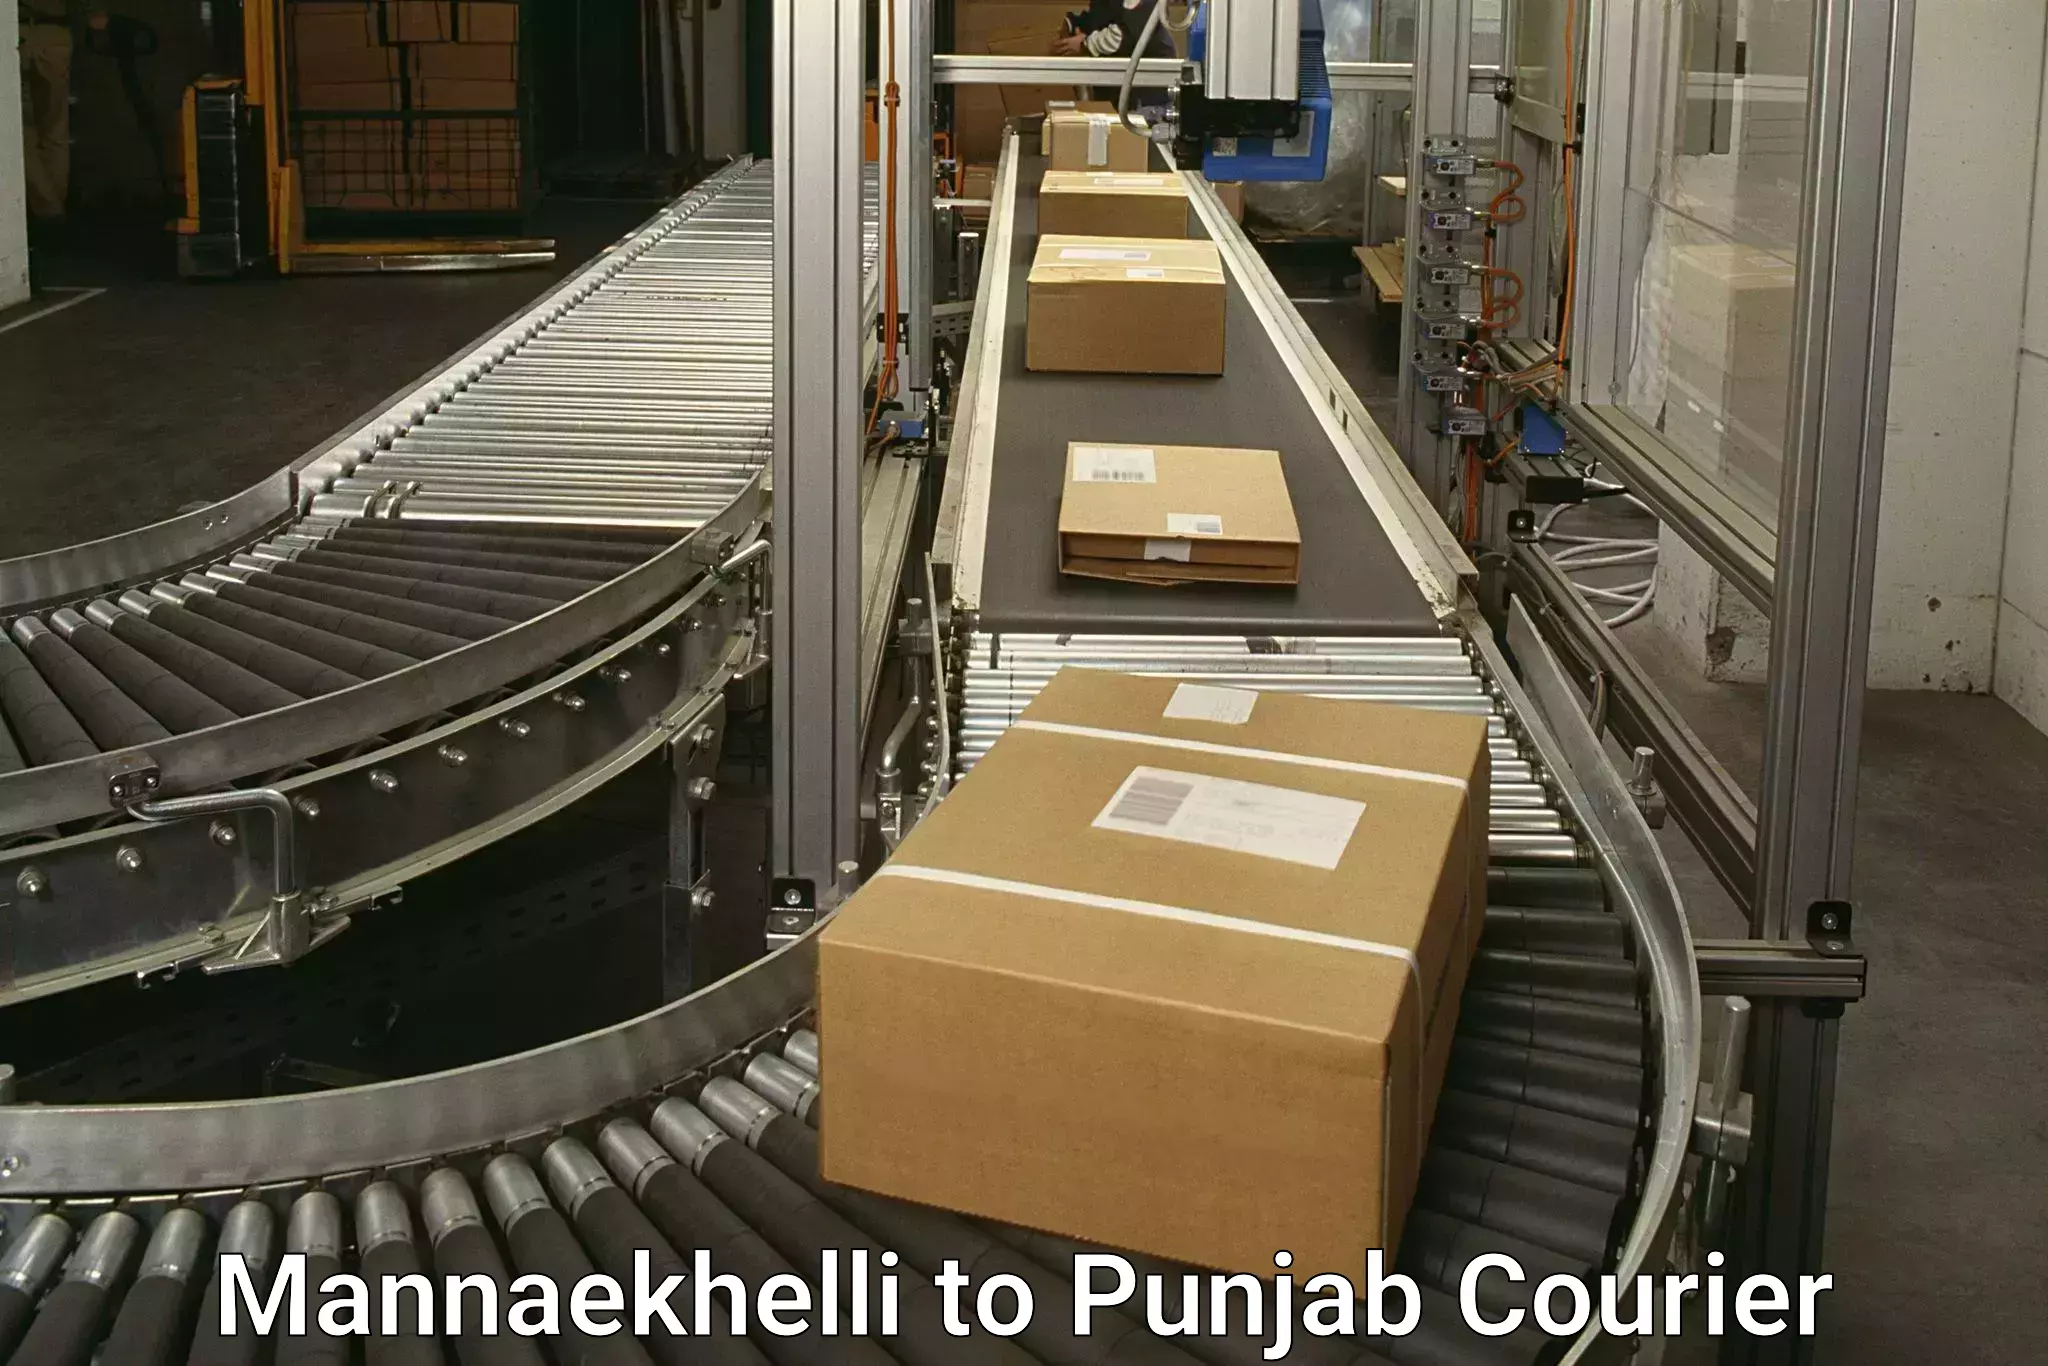 Cargo courier service Mannaekhelli to Faridkot